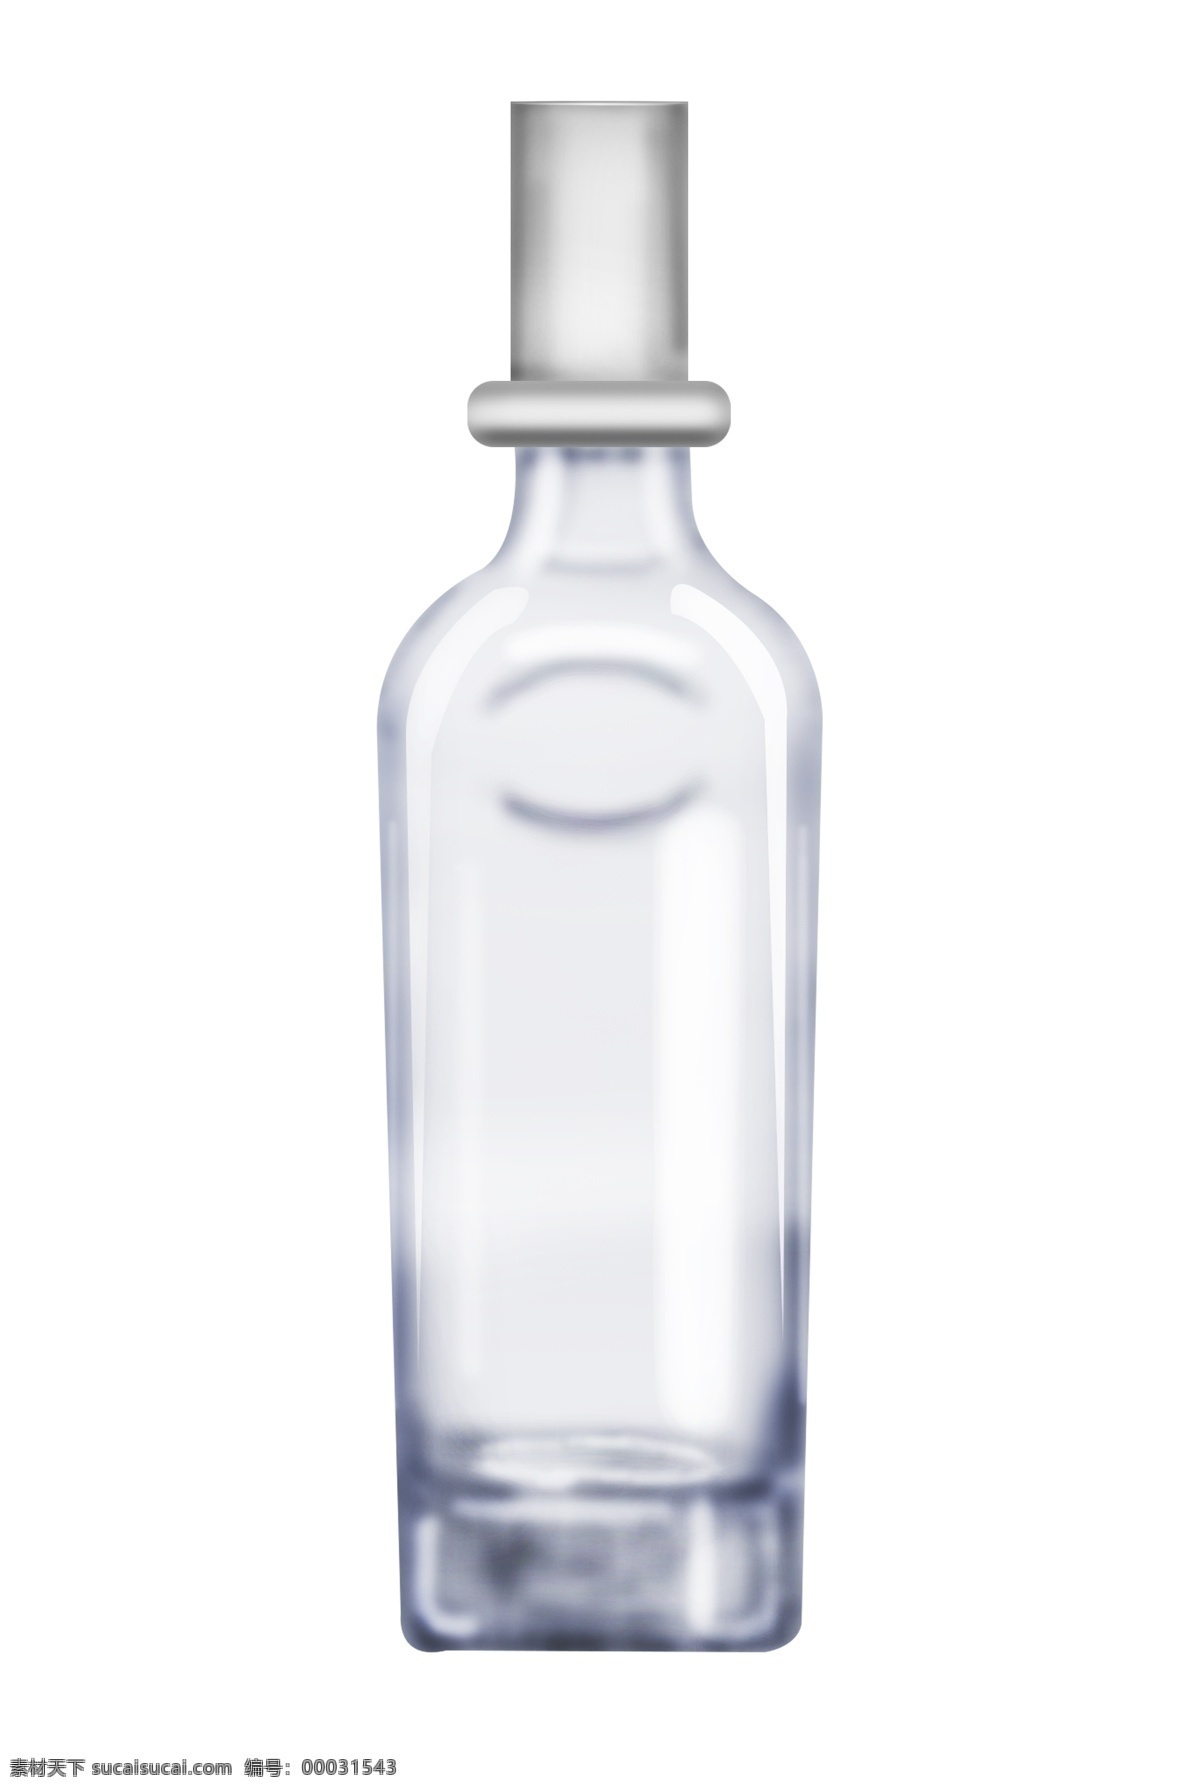 白色 立体 瓶子 插图 白色酒瓶子 立体酒瓶子 生活用品 瓶子图案 图案装饰 简约的瓶子 玻璃容器